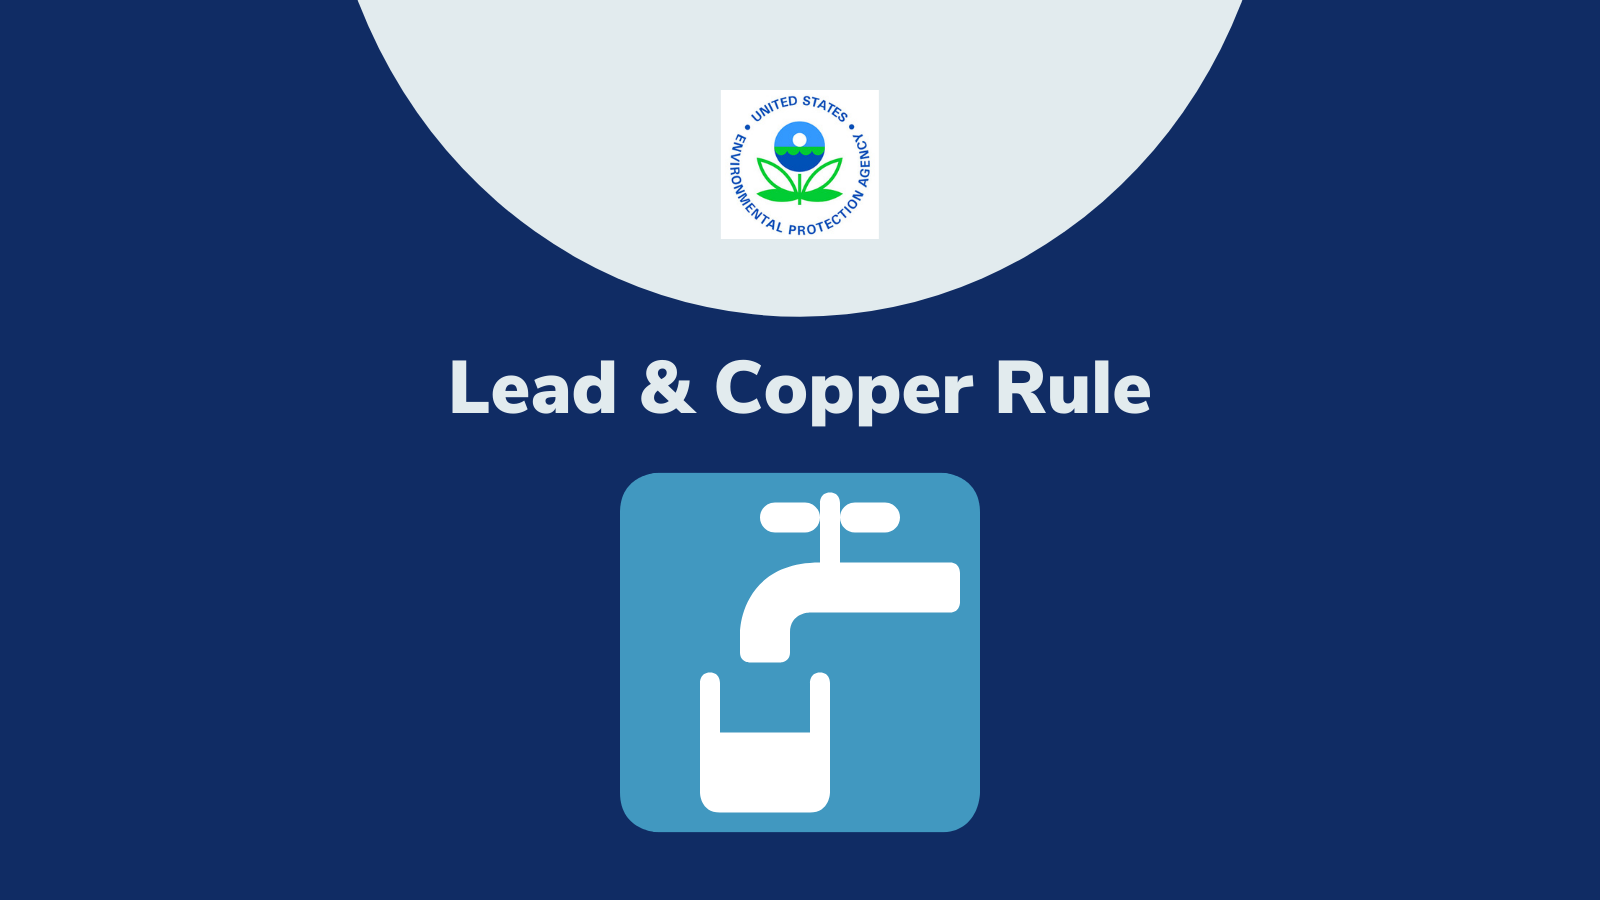 Lead & Copper Rule - EPA Change